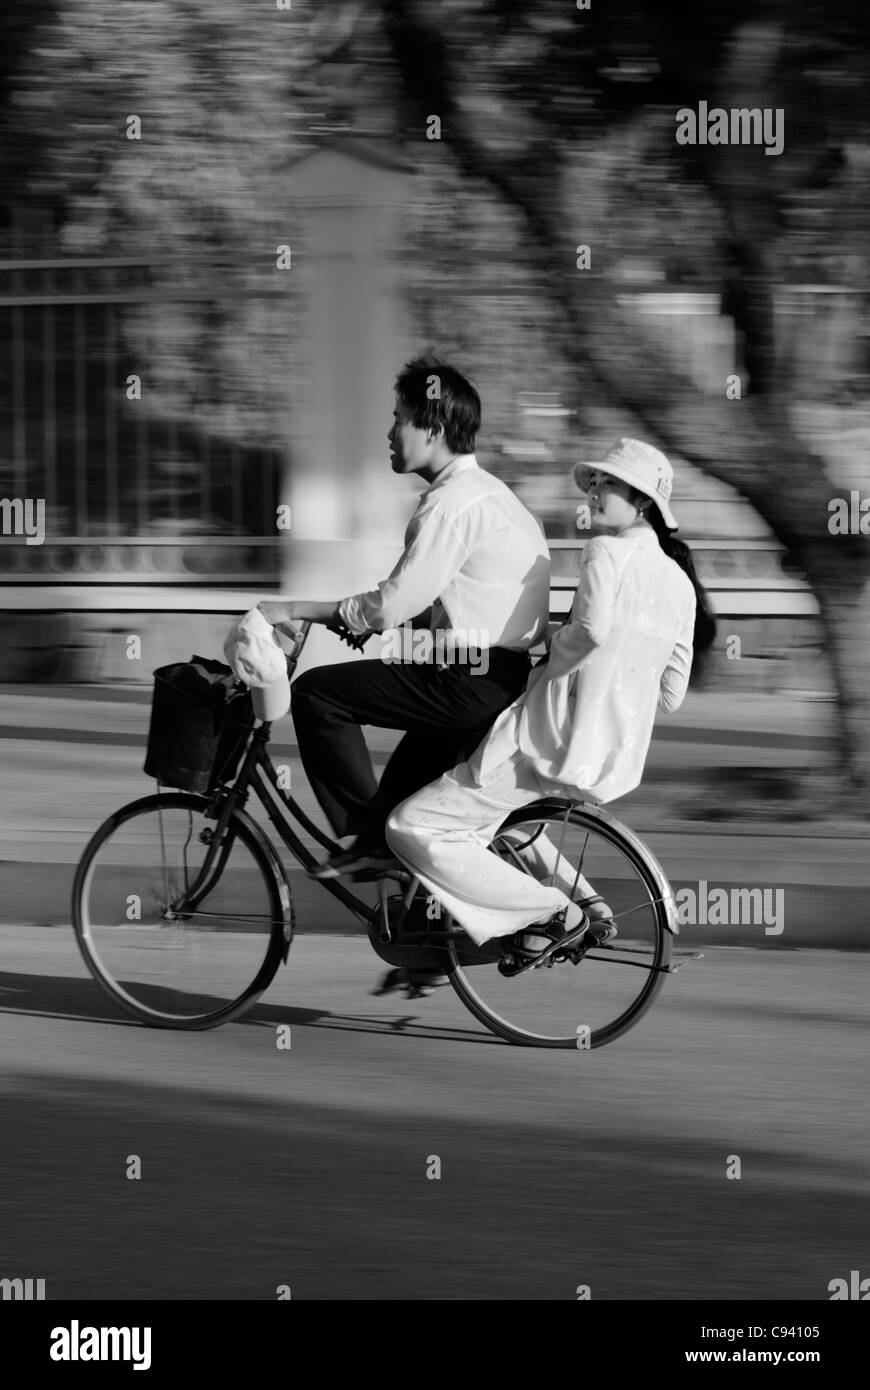 Asien, Vietnam, Hue. Jungen und Mädchen in traditionellen vietnamesischen weißen Kleid auf dem Fahrrad fahren. Stockfoto